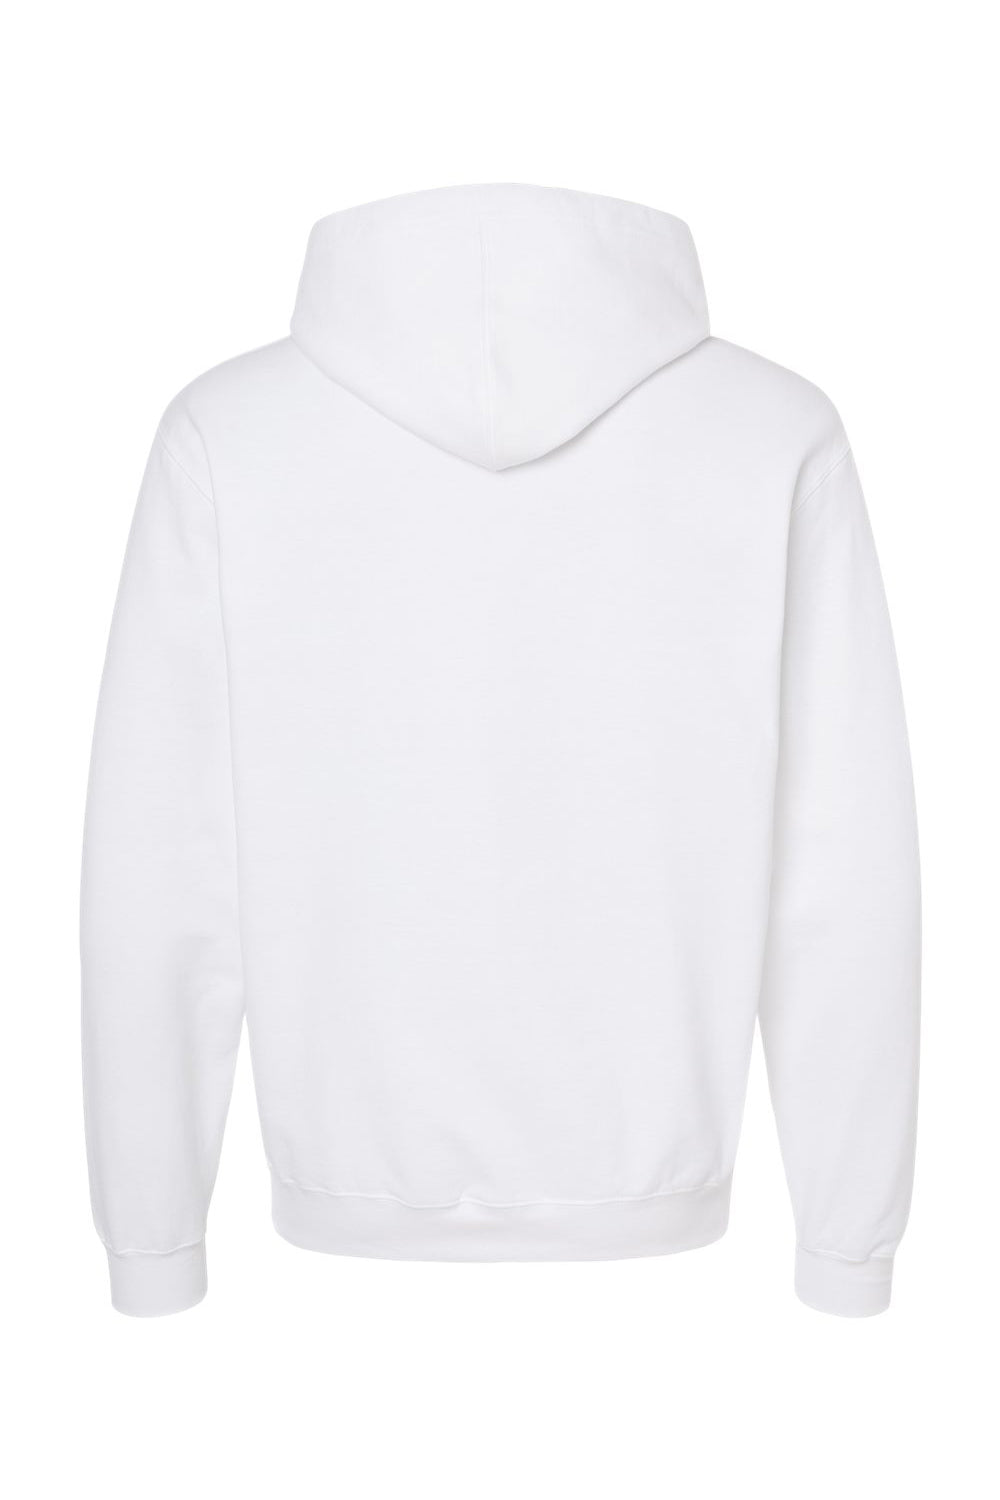 Tultex 320 Mens Fleece Hooded Sweatshirt Hoodie White Flat Back